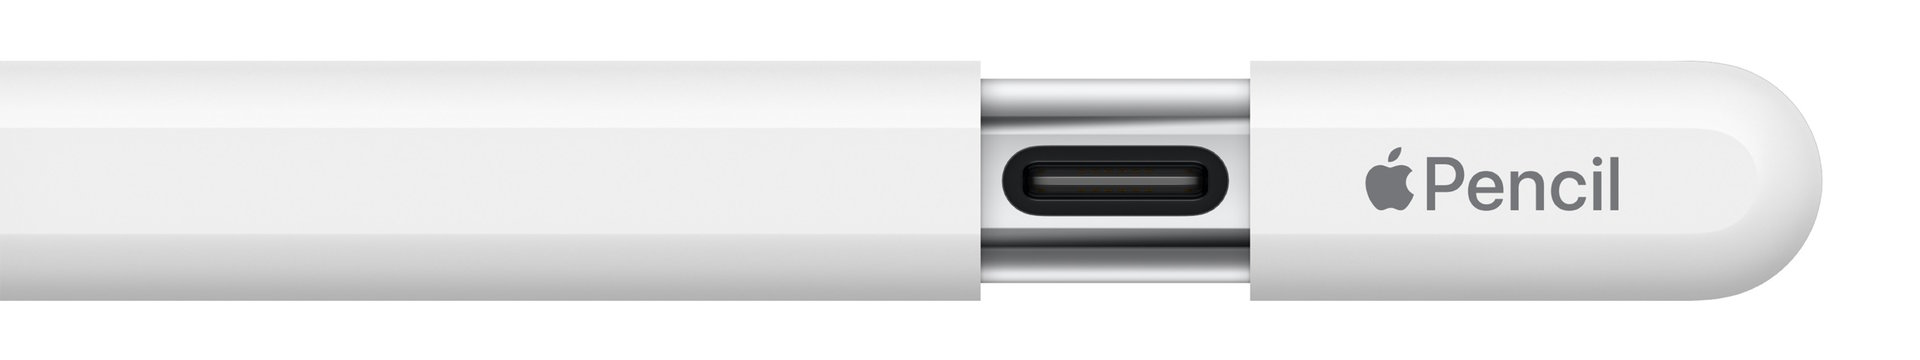 Apple Pencil USB C sliding cap screen